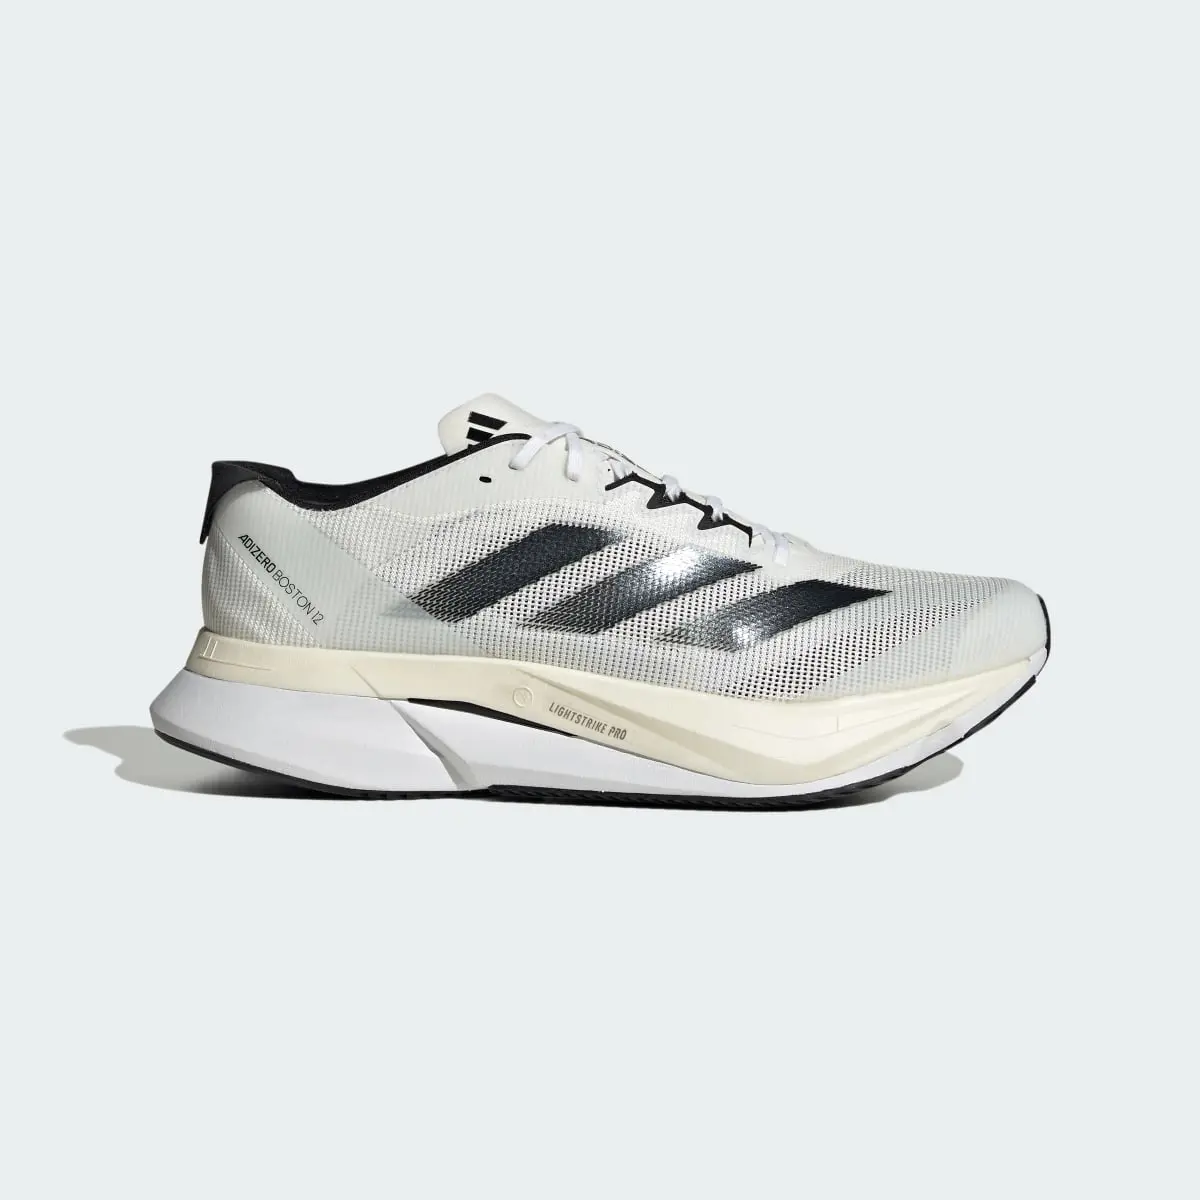 Adidas Adizero Boston 12 Running Shoes. 2